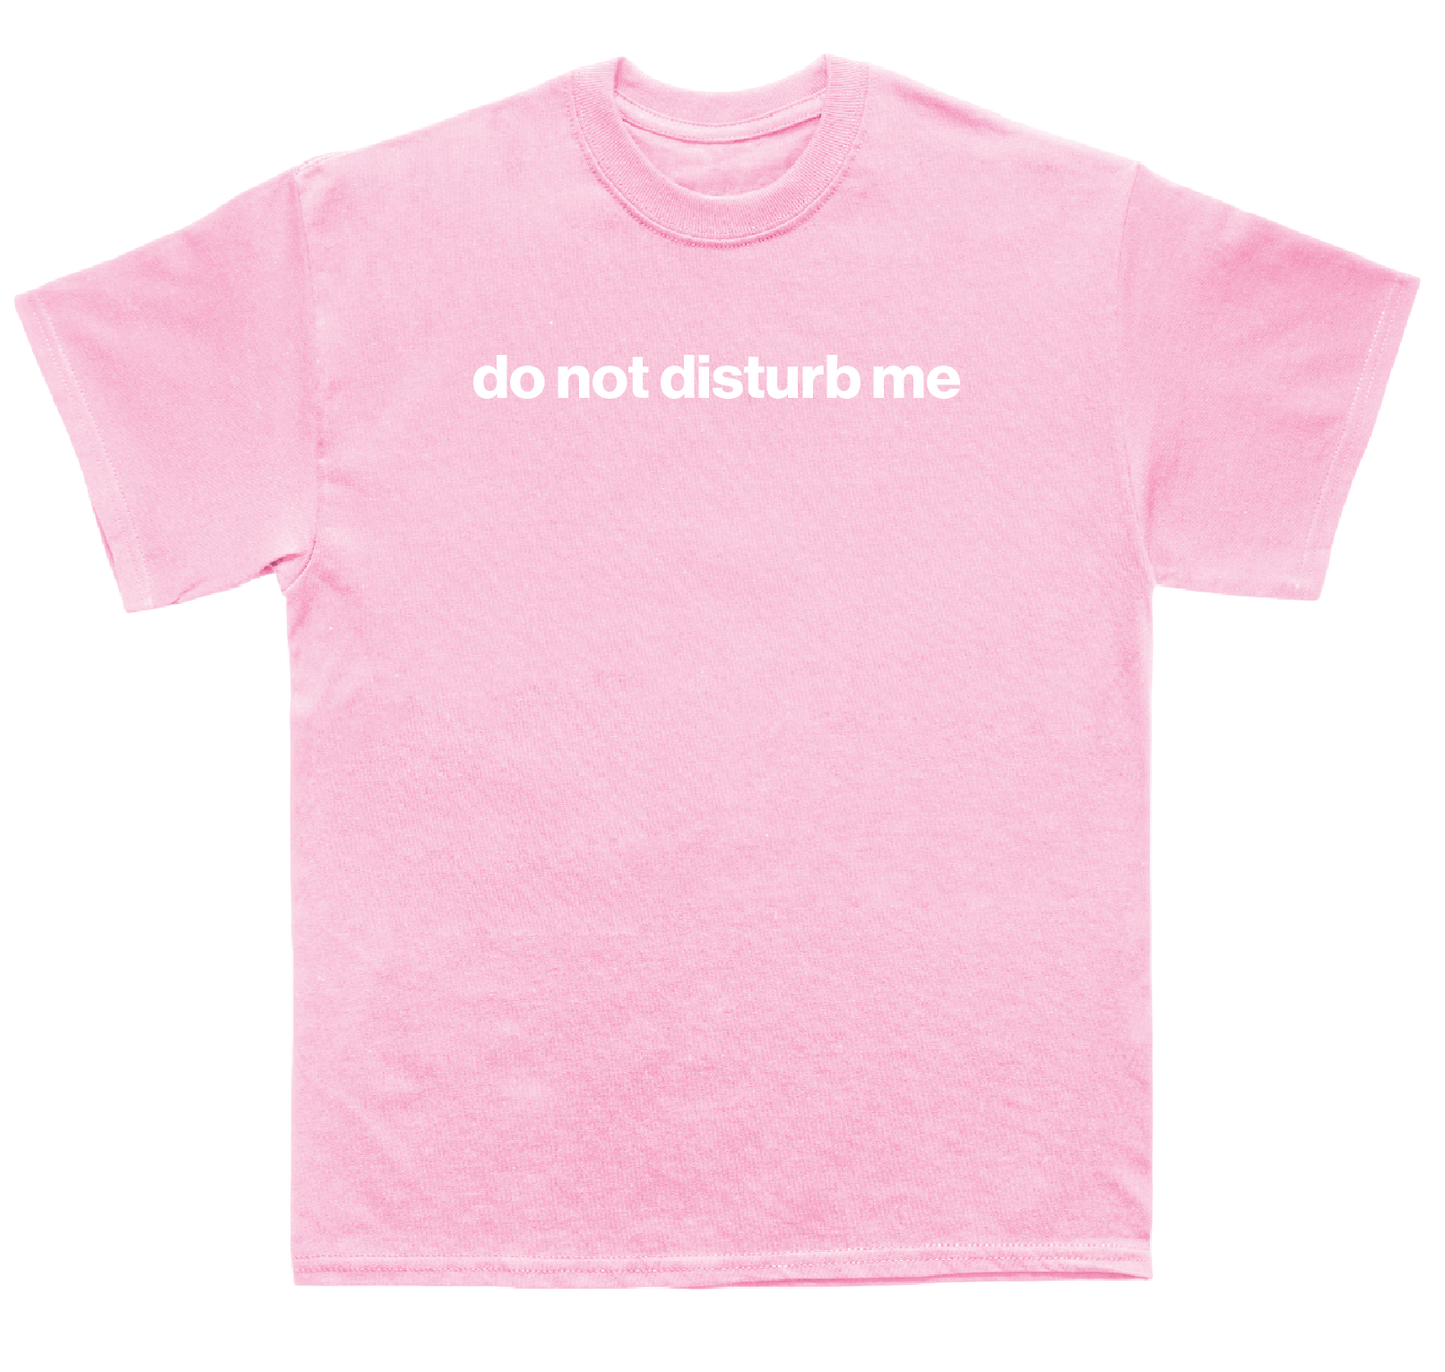 do not disturb me shirt